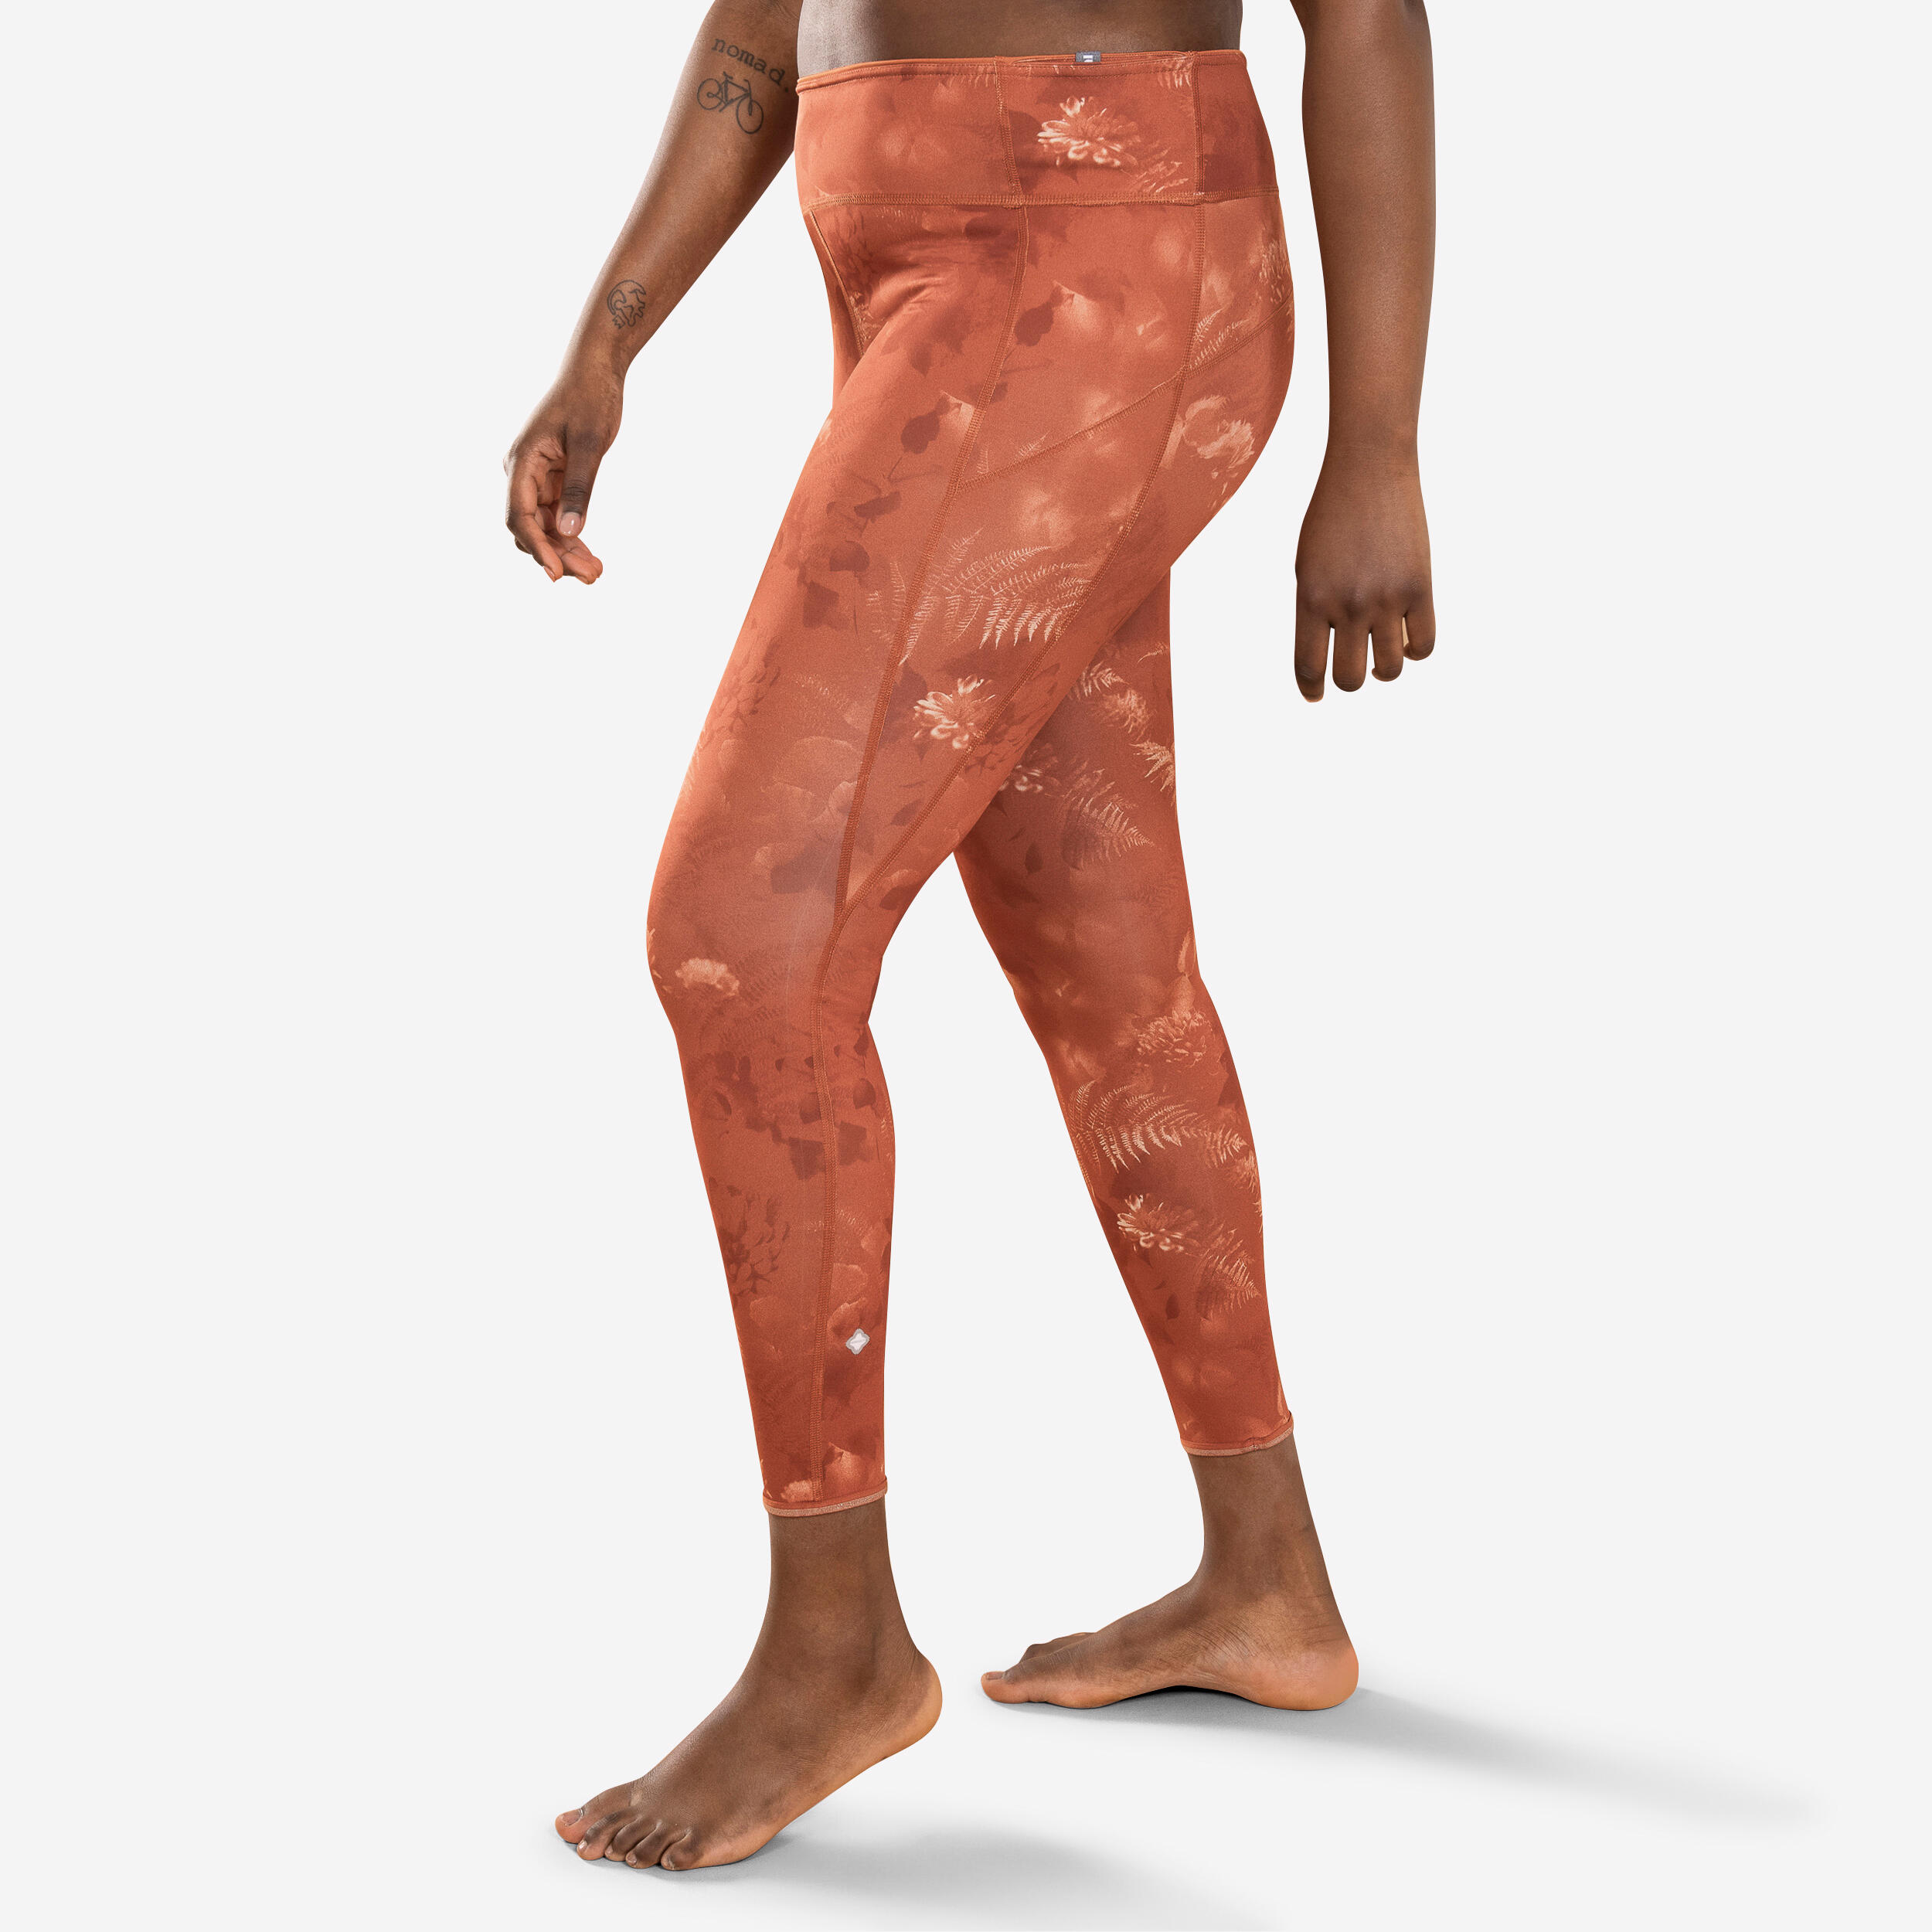 Women's Dynamic Yoga Reversible Leggings - Solid/Print Brown and Orange 1/7